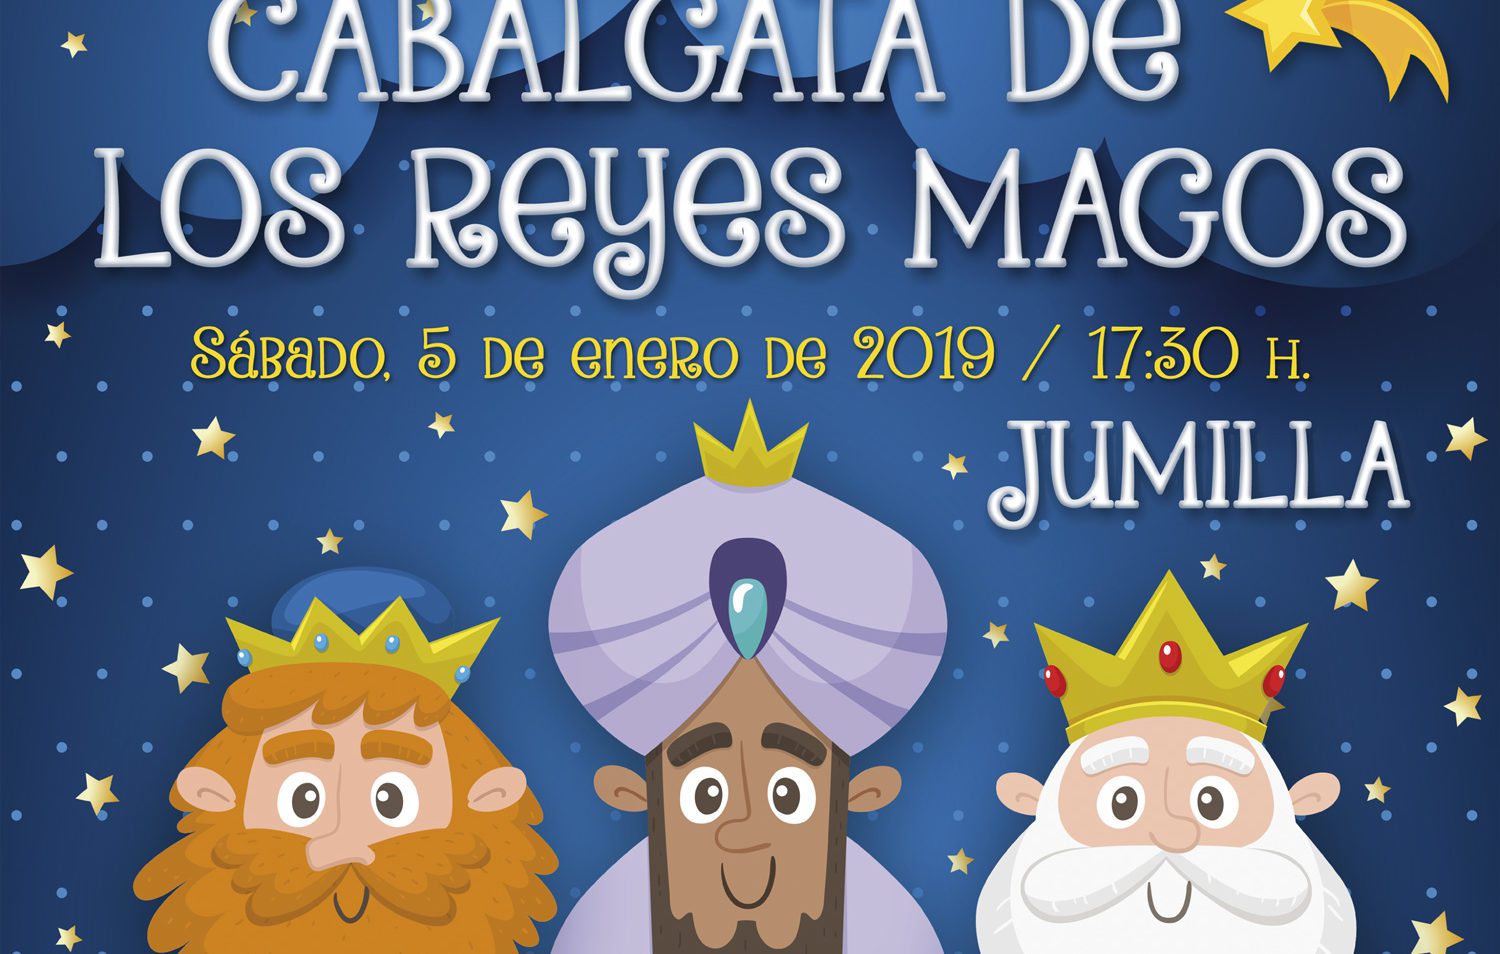 15 colectivos jumillanos participarán en la Cabalgata de Reyes, donde se repartirán 7.000 juguetes y 20.000 golosinas